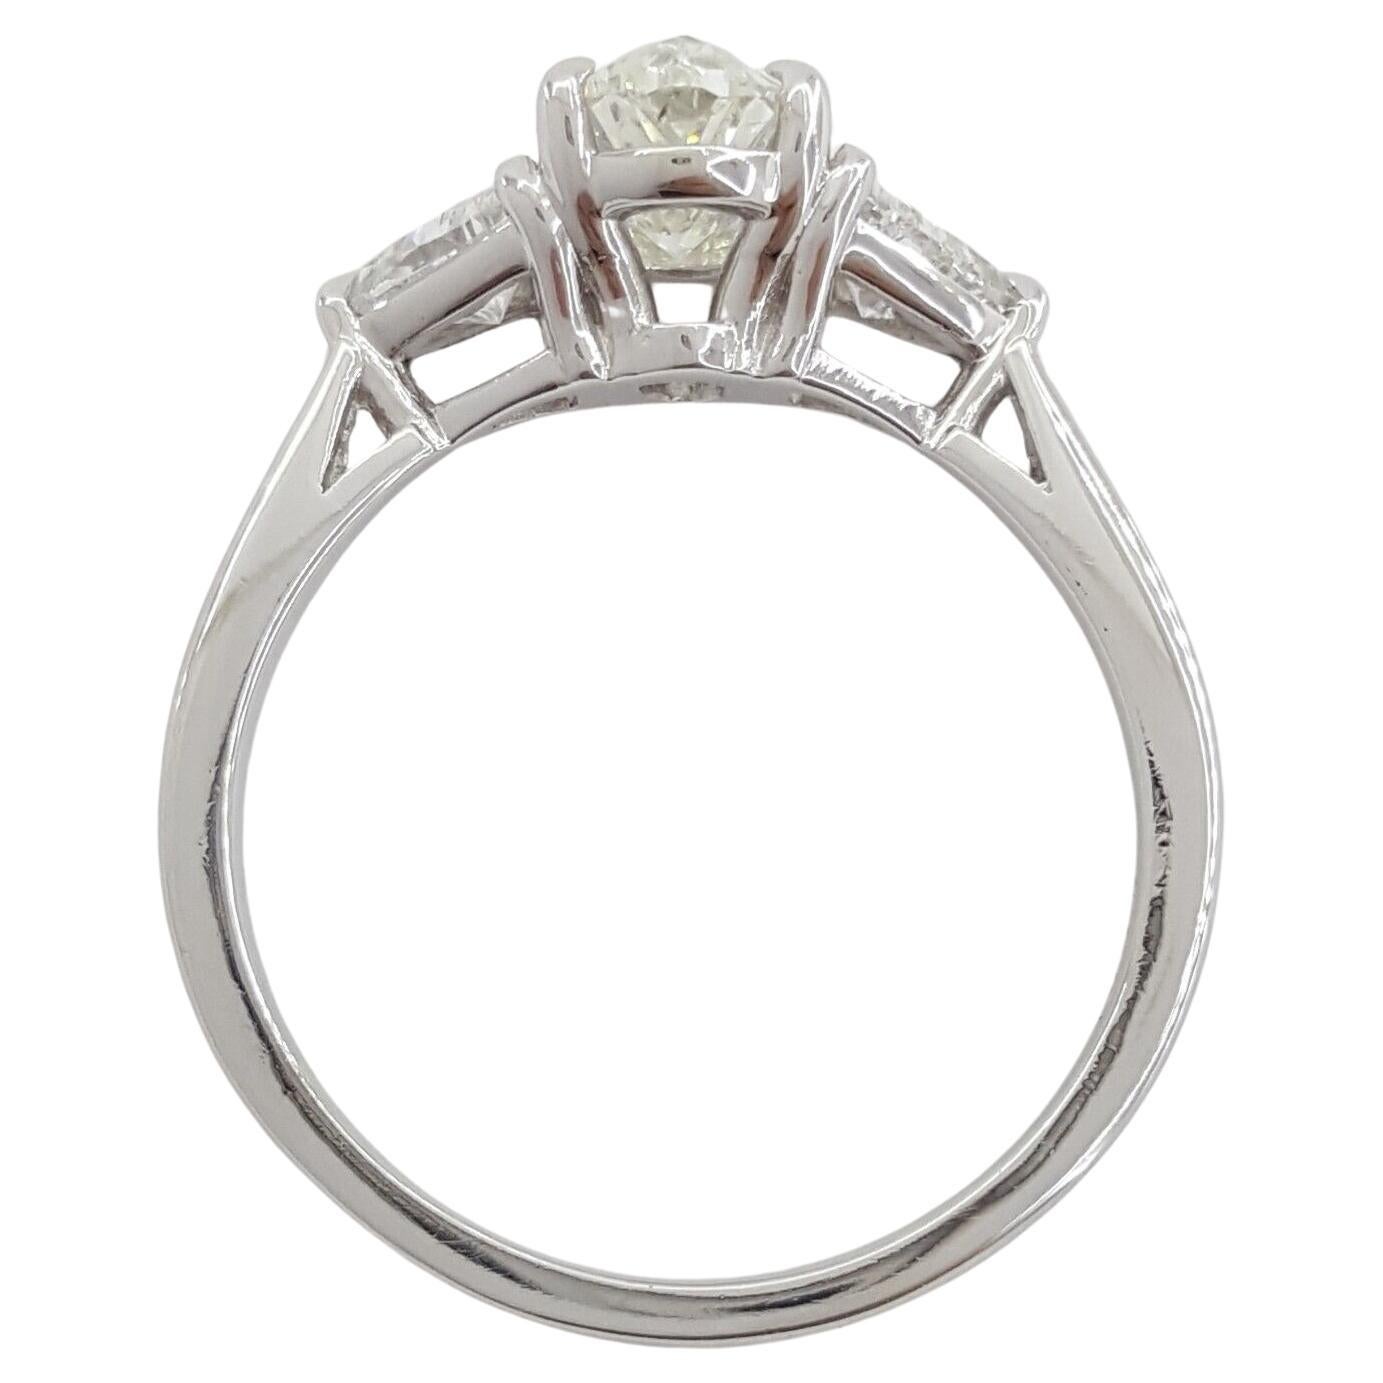 Dreisteiniger Platin-Diamant-Verlobungsring mit ovalem Brillantschliff und einem Gesamtgewicht von 1,91 Karat. Mit einem Gewicht von 5 Gramm und einer Größe von 7,25 besitzt dieser elegante Ring einen Mittelstein von 1,31 Karat, einen natürlichen